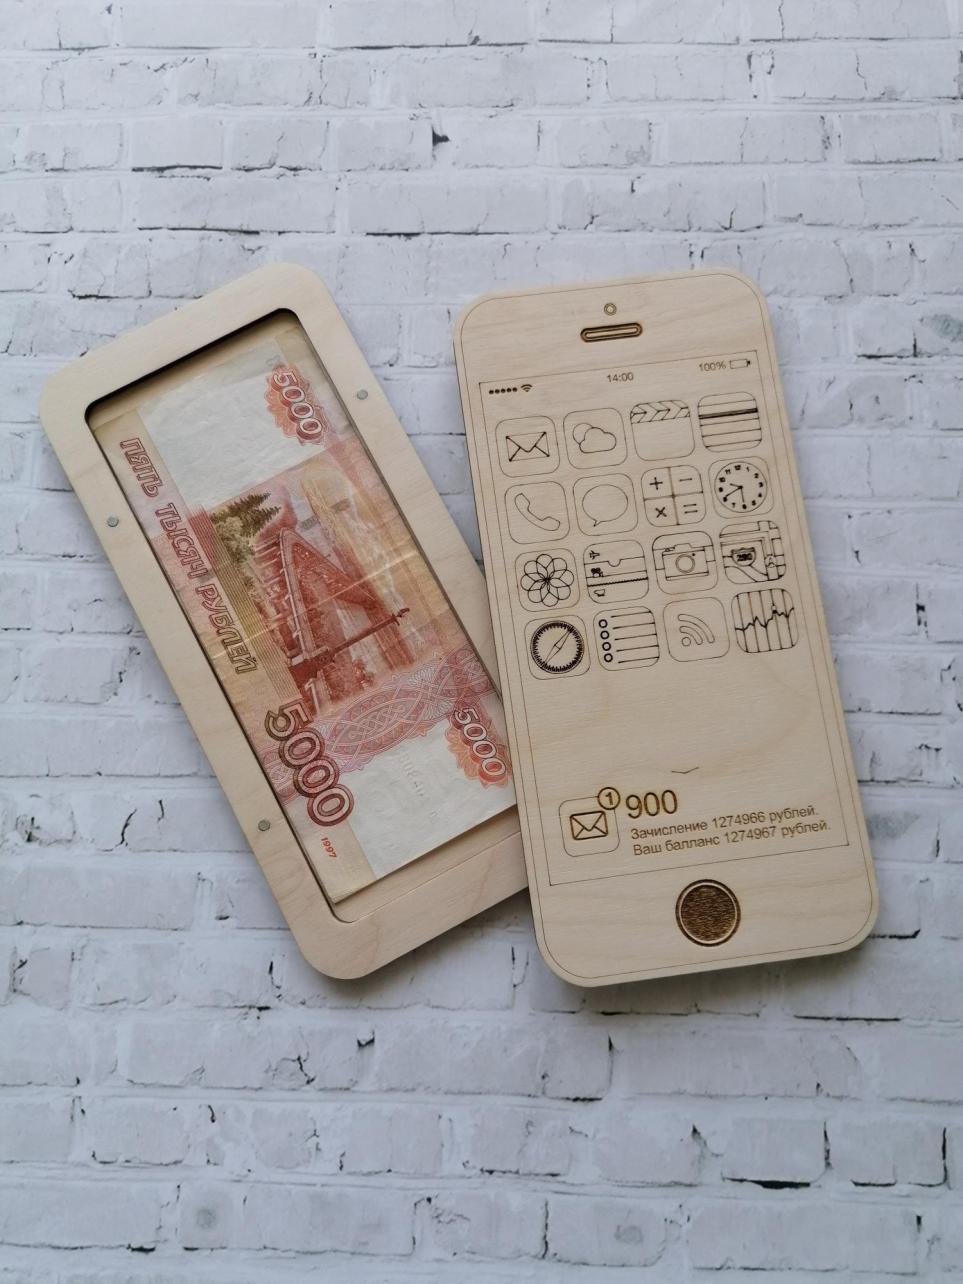 Porta banconote in legno tagliato al laser a forma di iPhone